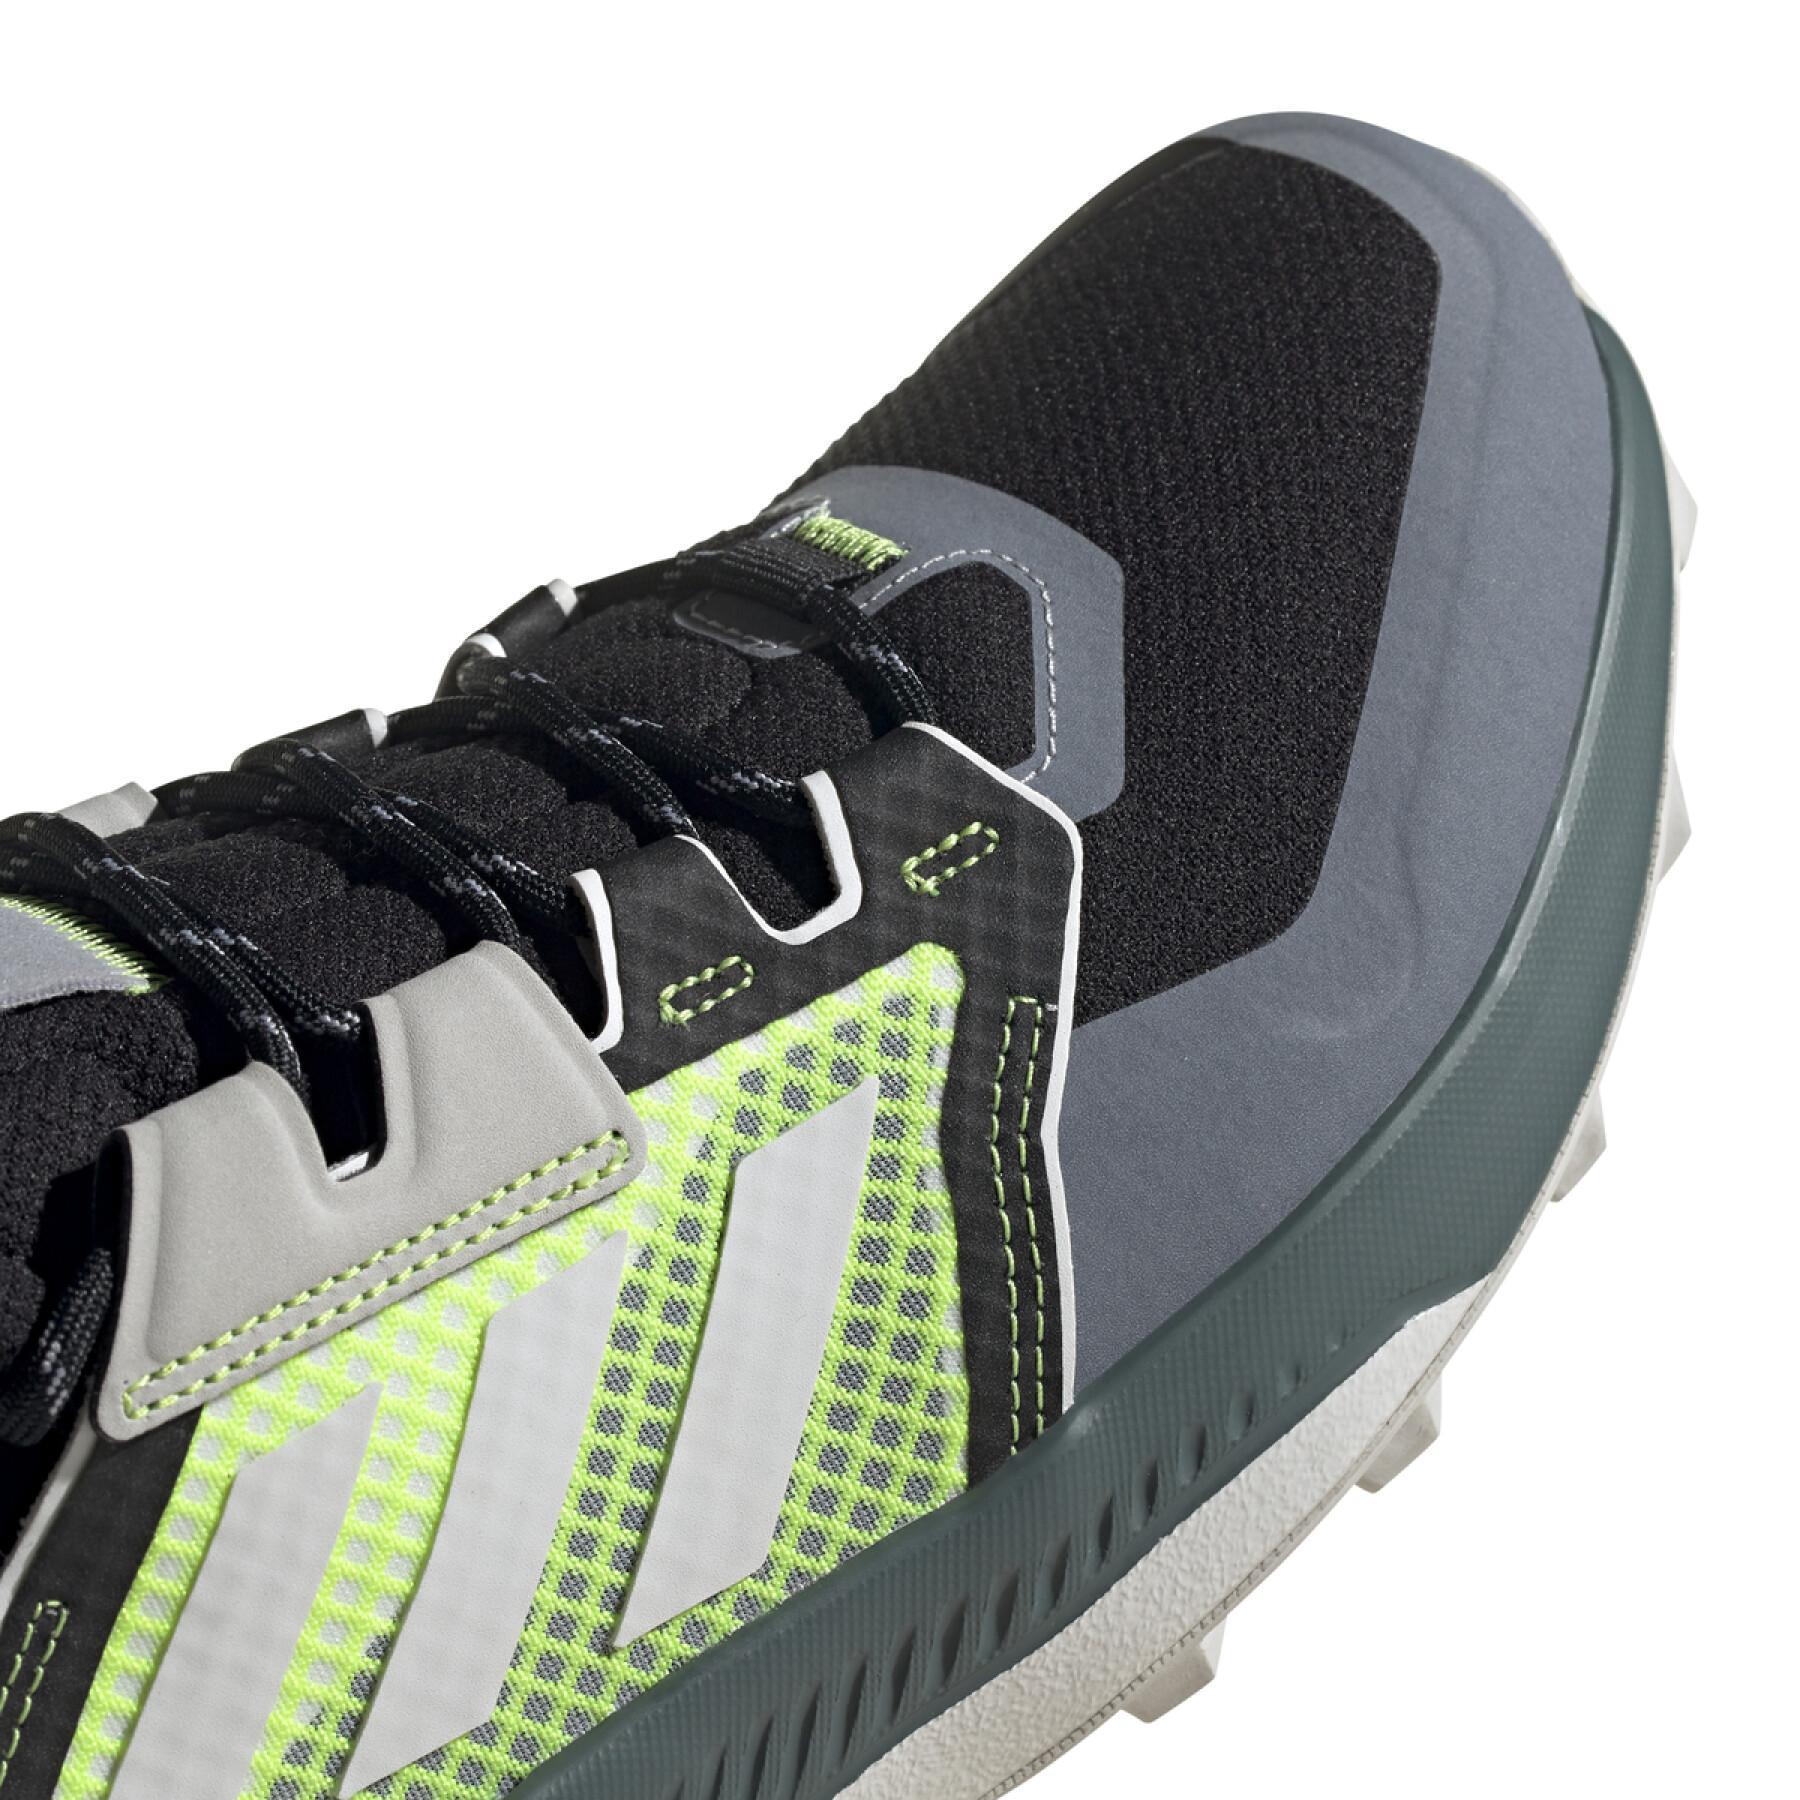 Sapatos para caminhadas Adidas Terrex trailmaker